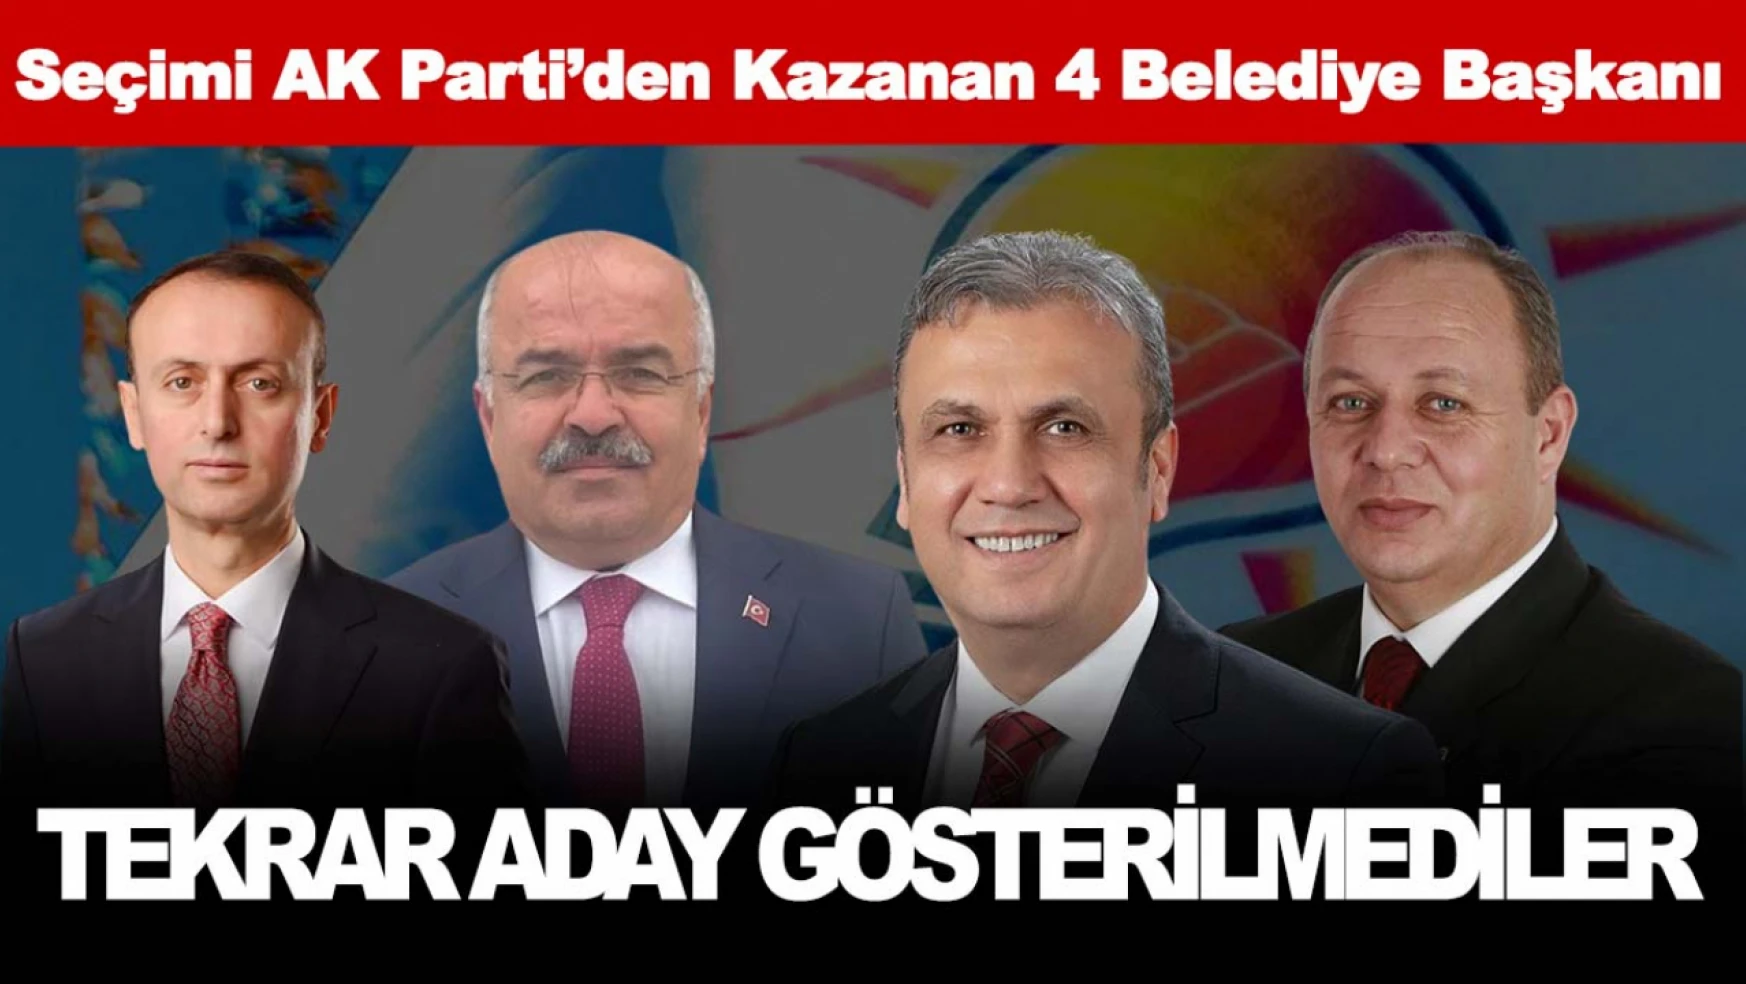 AK Parti Kastamonu'da Mevcut 4 Belediye Başkanı Yeniden Aday Gösterilmedi